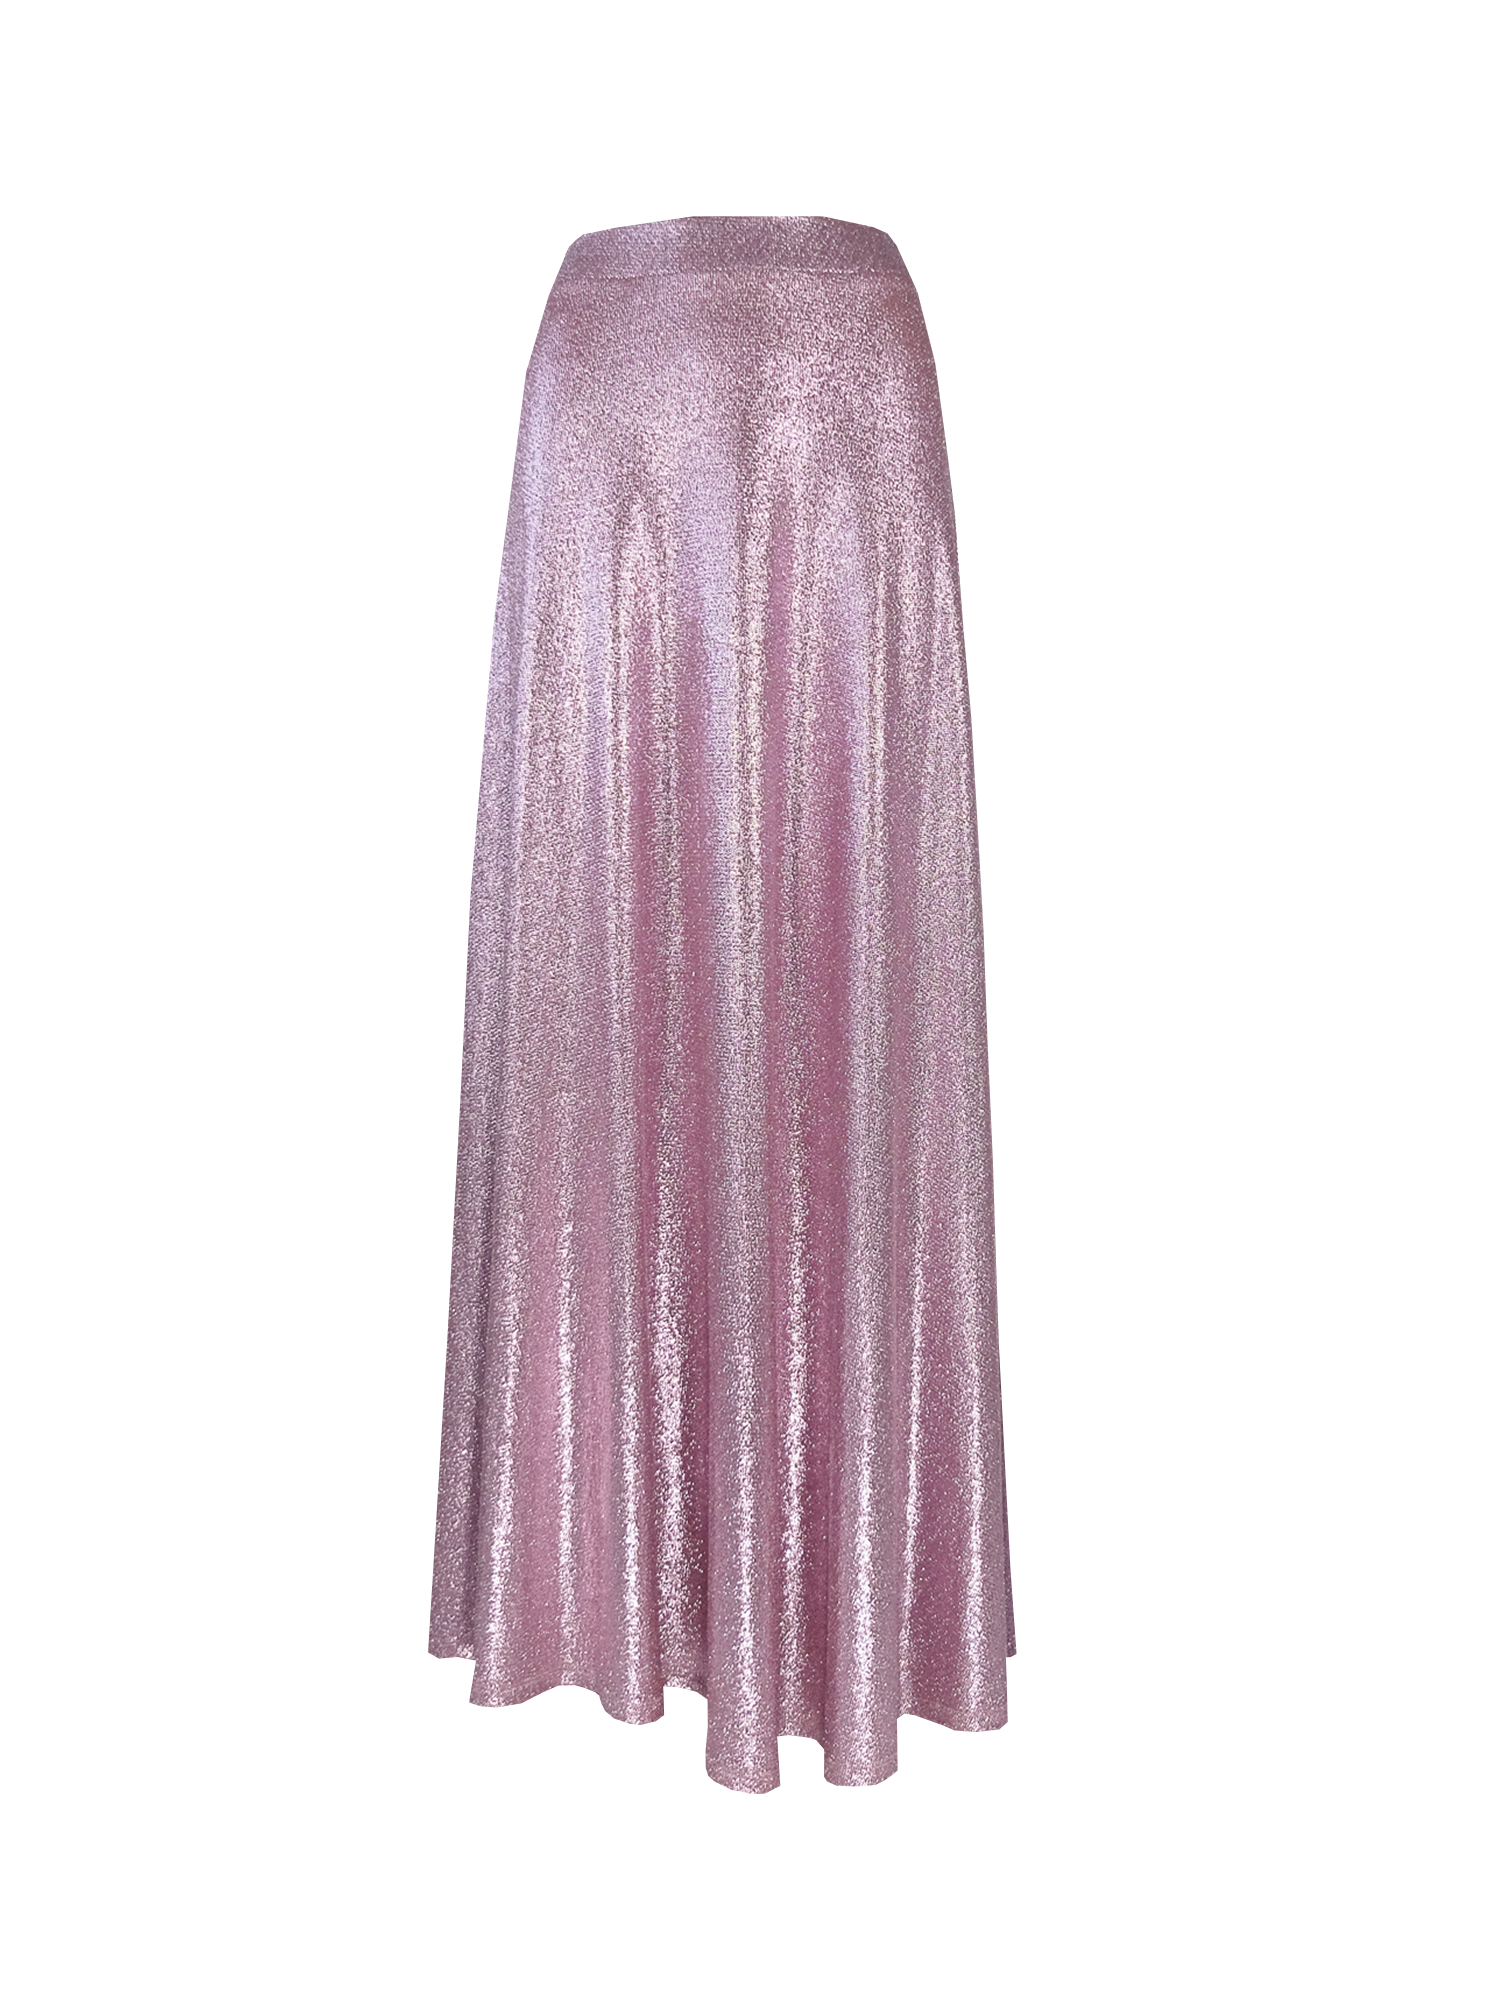 TOSCA - pink lurex long skirt